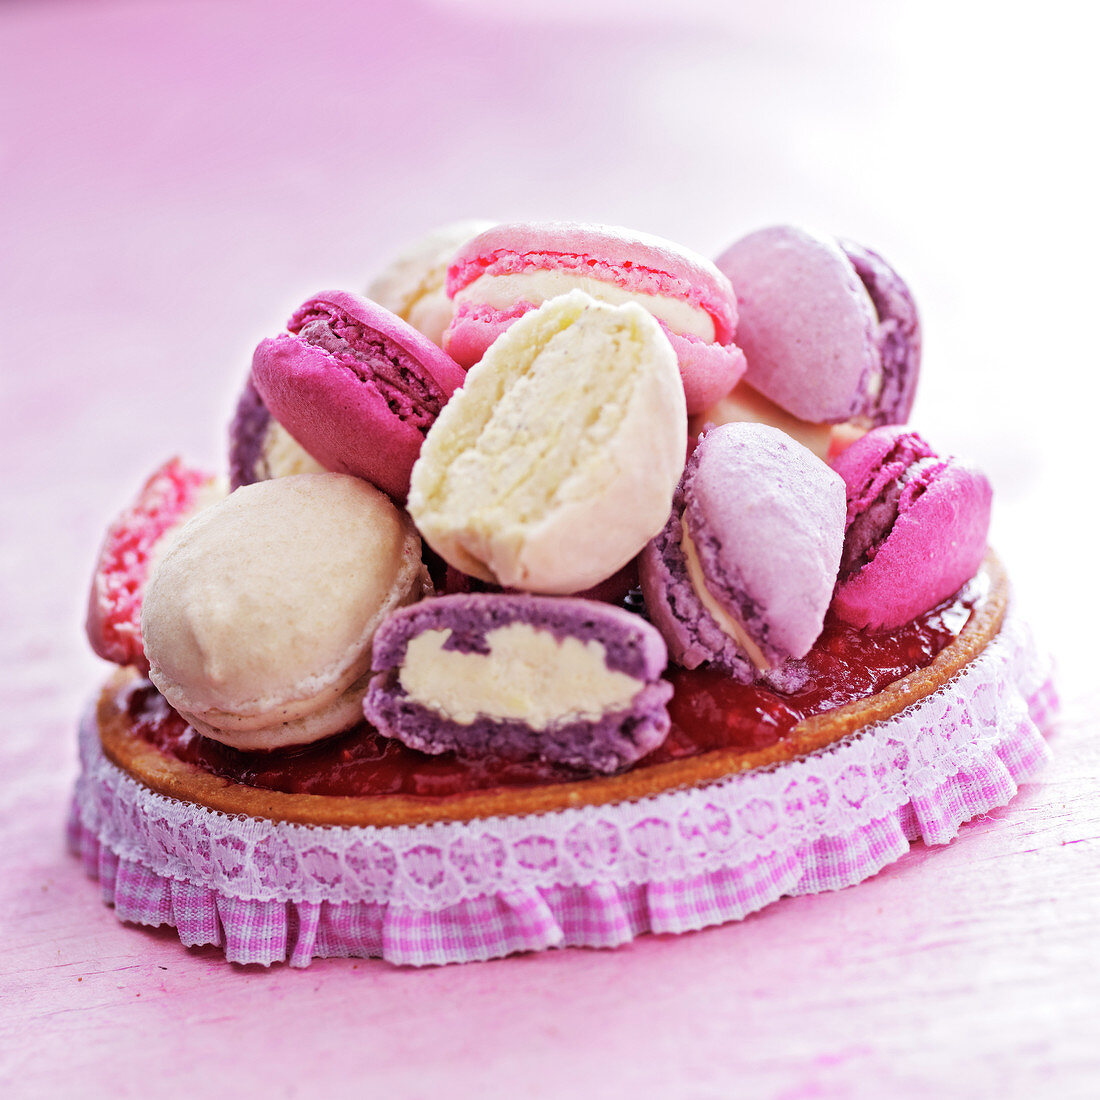 Pink praline and Macaron girly tart